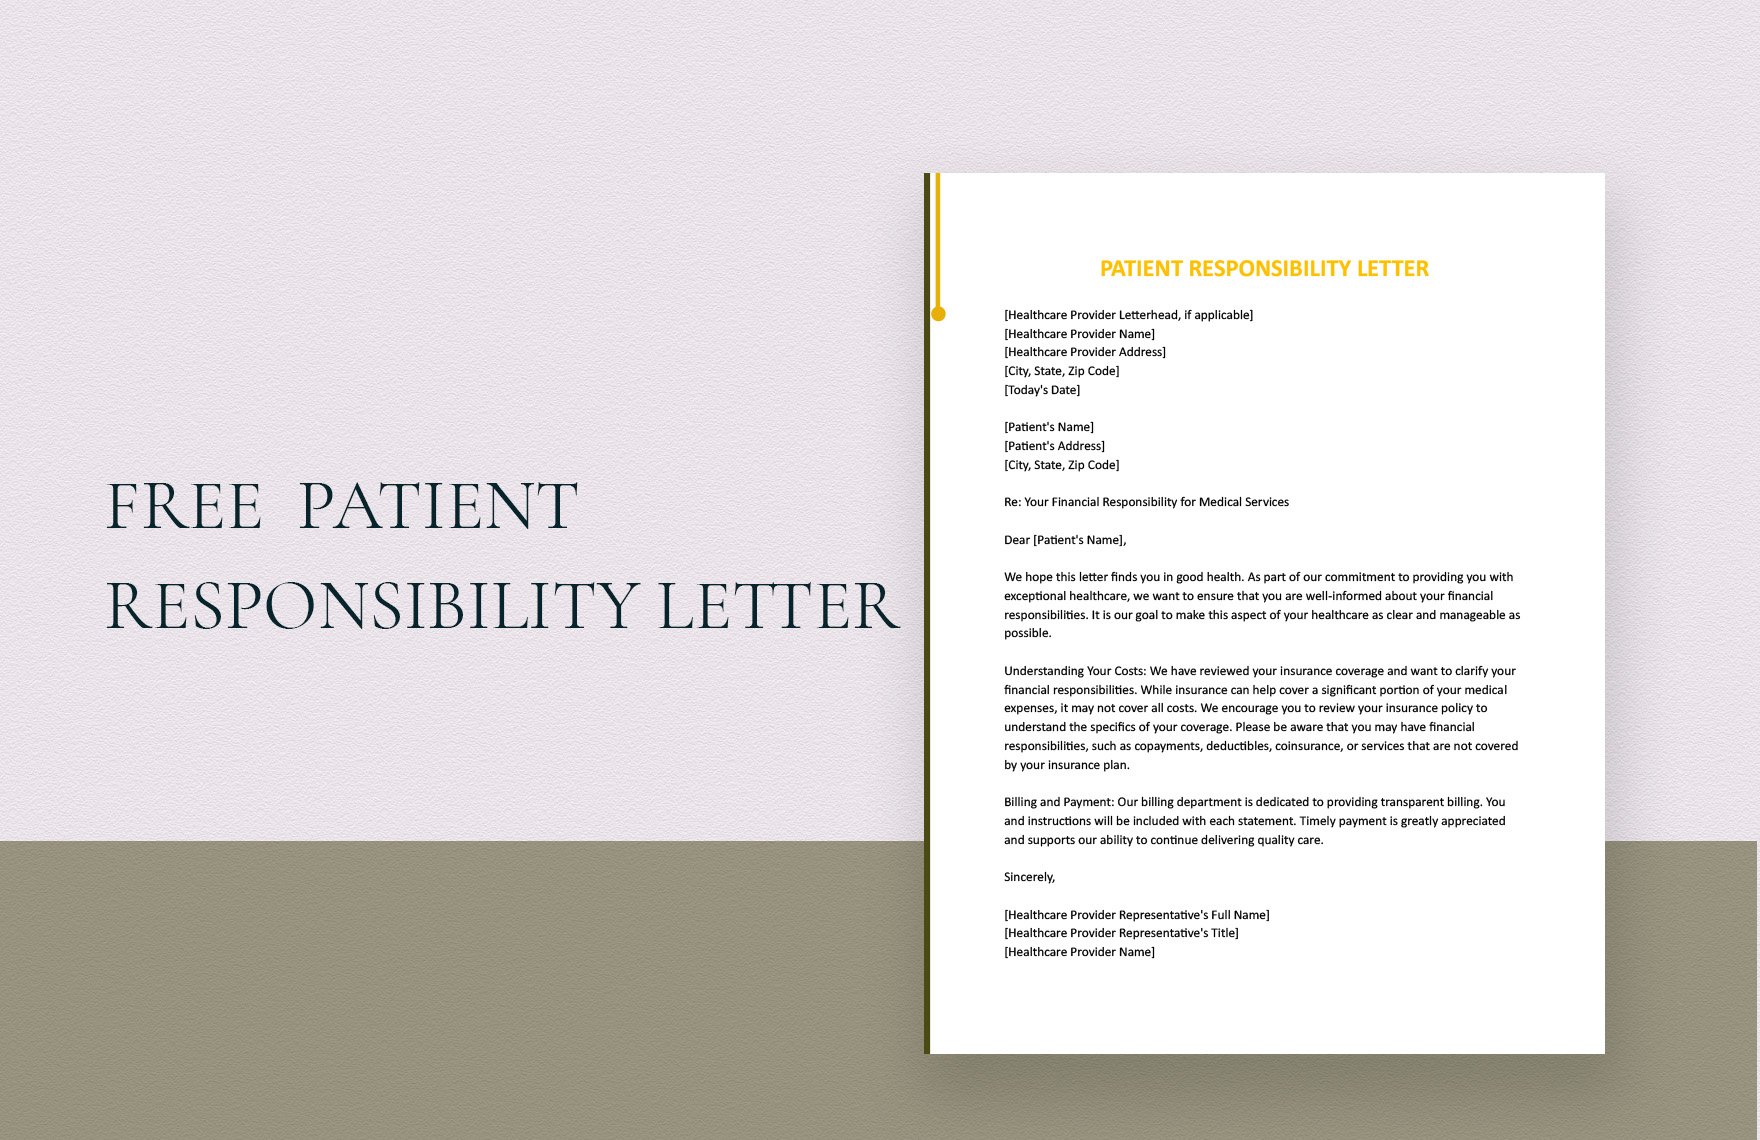 Patient Responsibility Letter